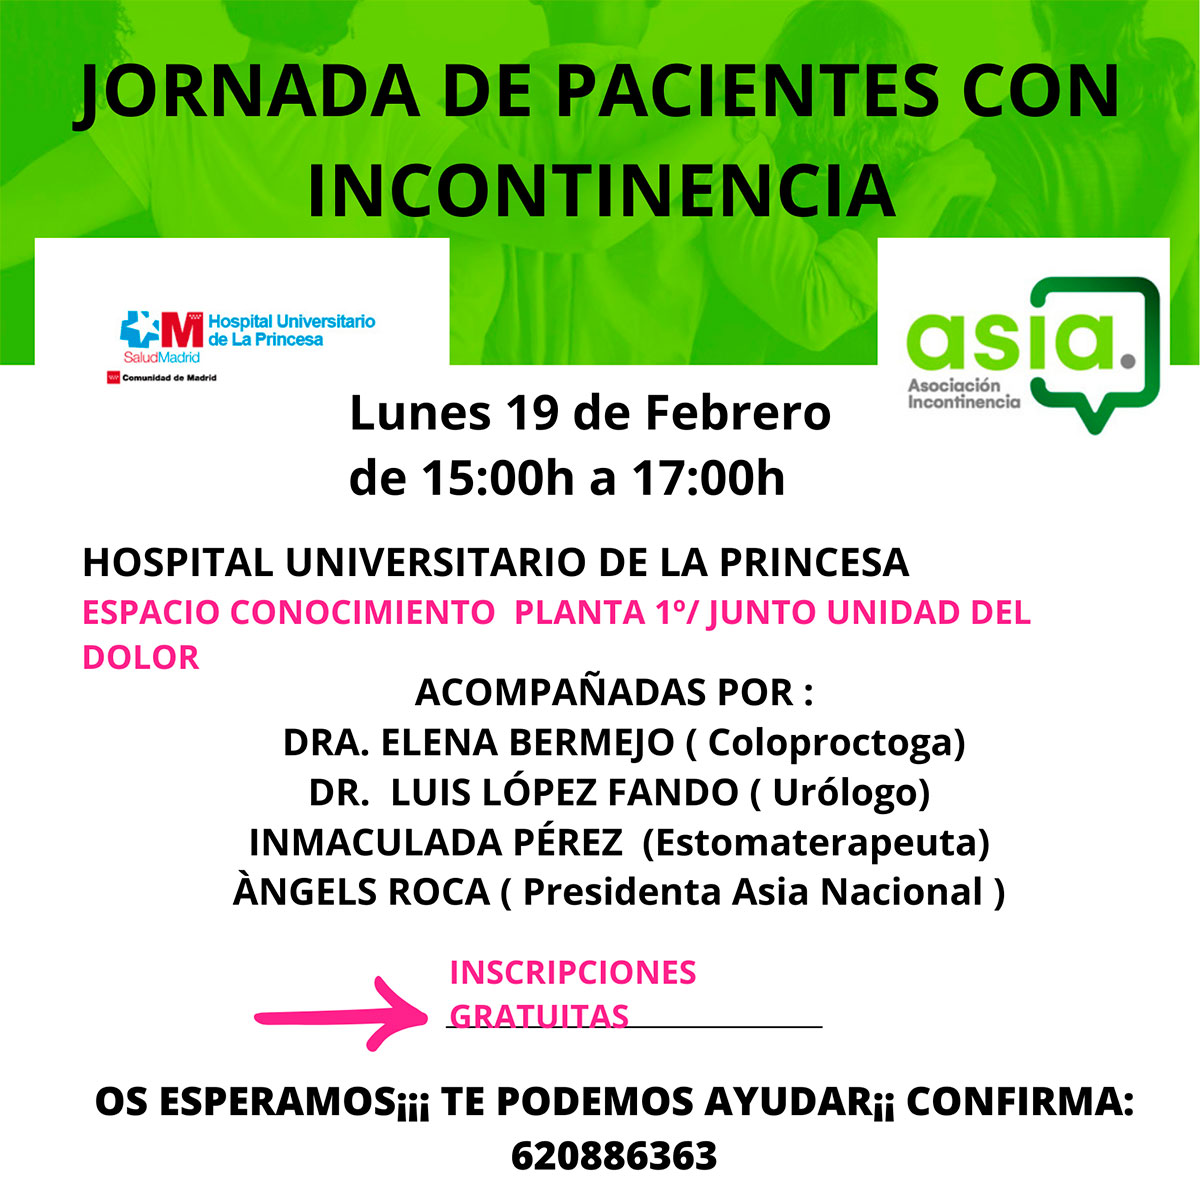 Jornada de pacientes con incontinencia - Hospital Universitario de la Princesa - Asia